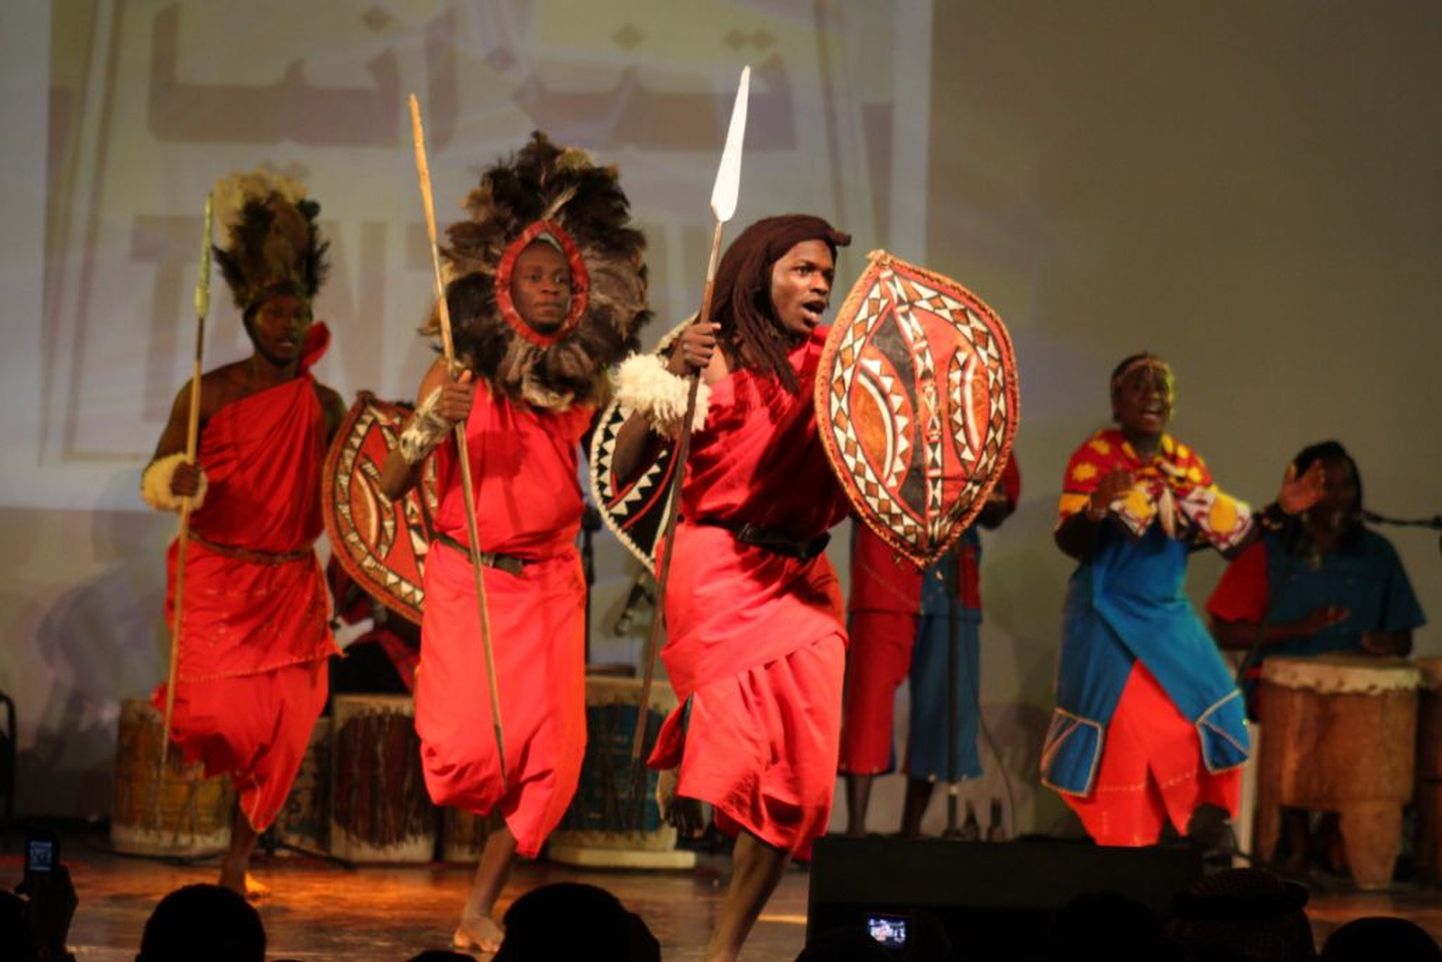 Baltica Sangaste maapäevale tulijaid võtavad vastu eksootilised esinejad Keeniast. Folkloorirühm Sanalimu tutvustab Aafrika rahvaste laule ja tantse.